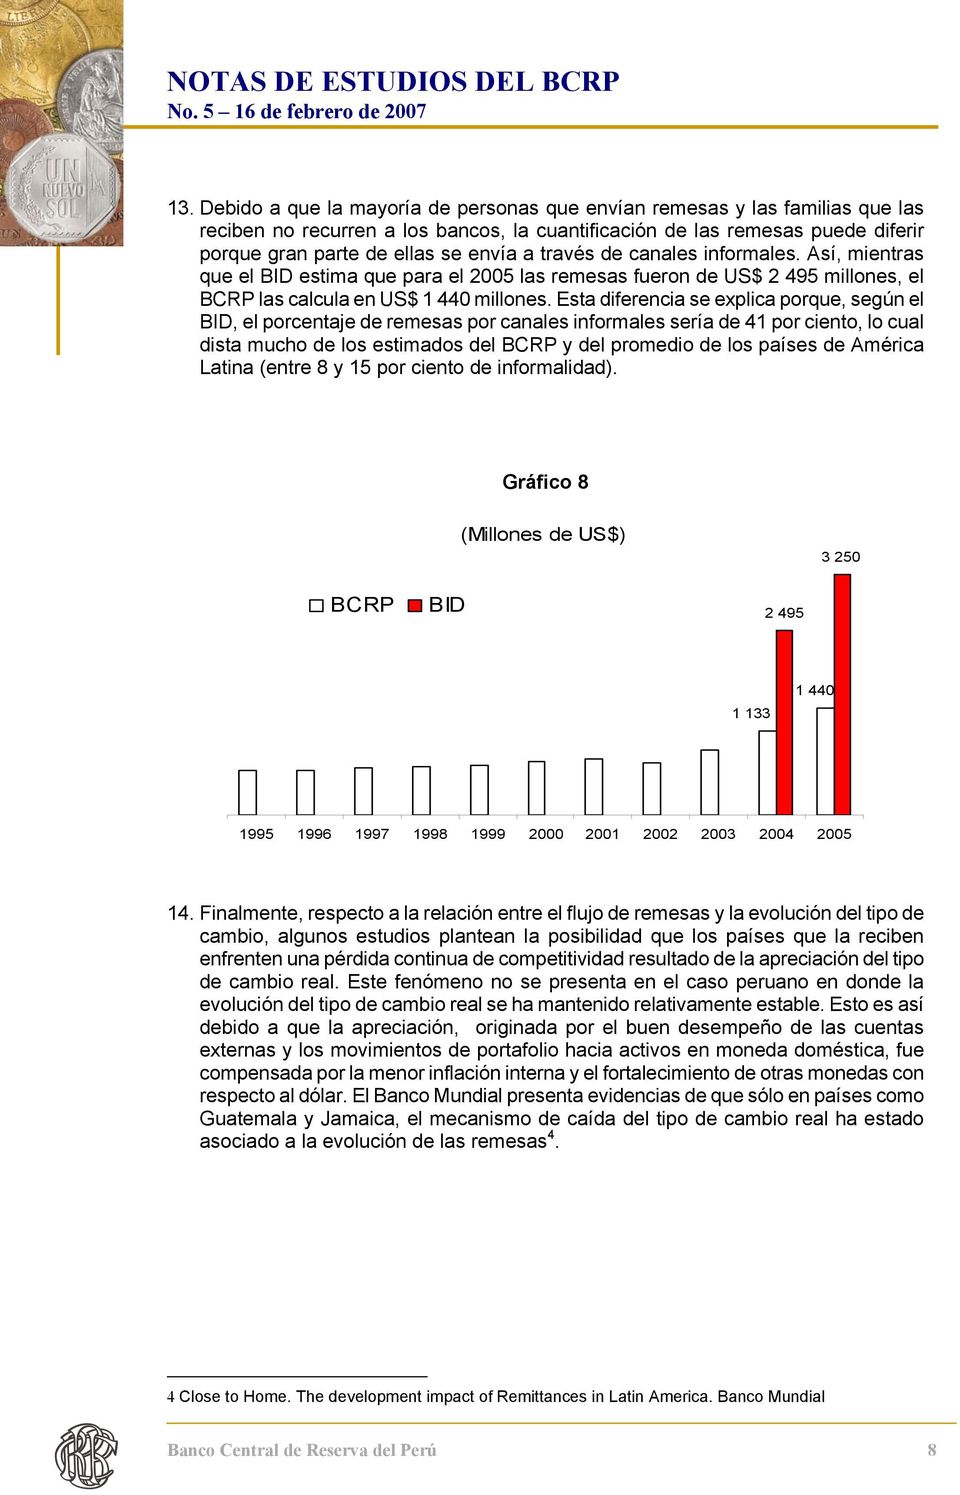 Esta diferencia se explica porque, según el BID, el porcentaje de remesas por canales informales sería de 41 por ciento, lo cual dista mucho de los estimados del BCRP y del promedio de los países de